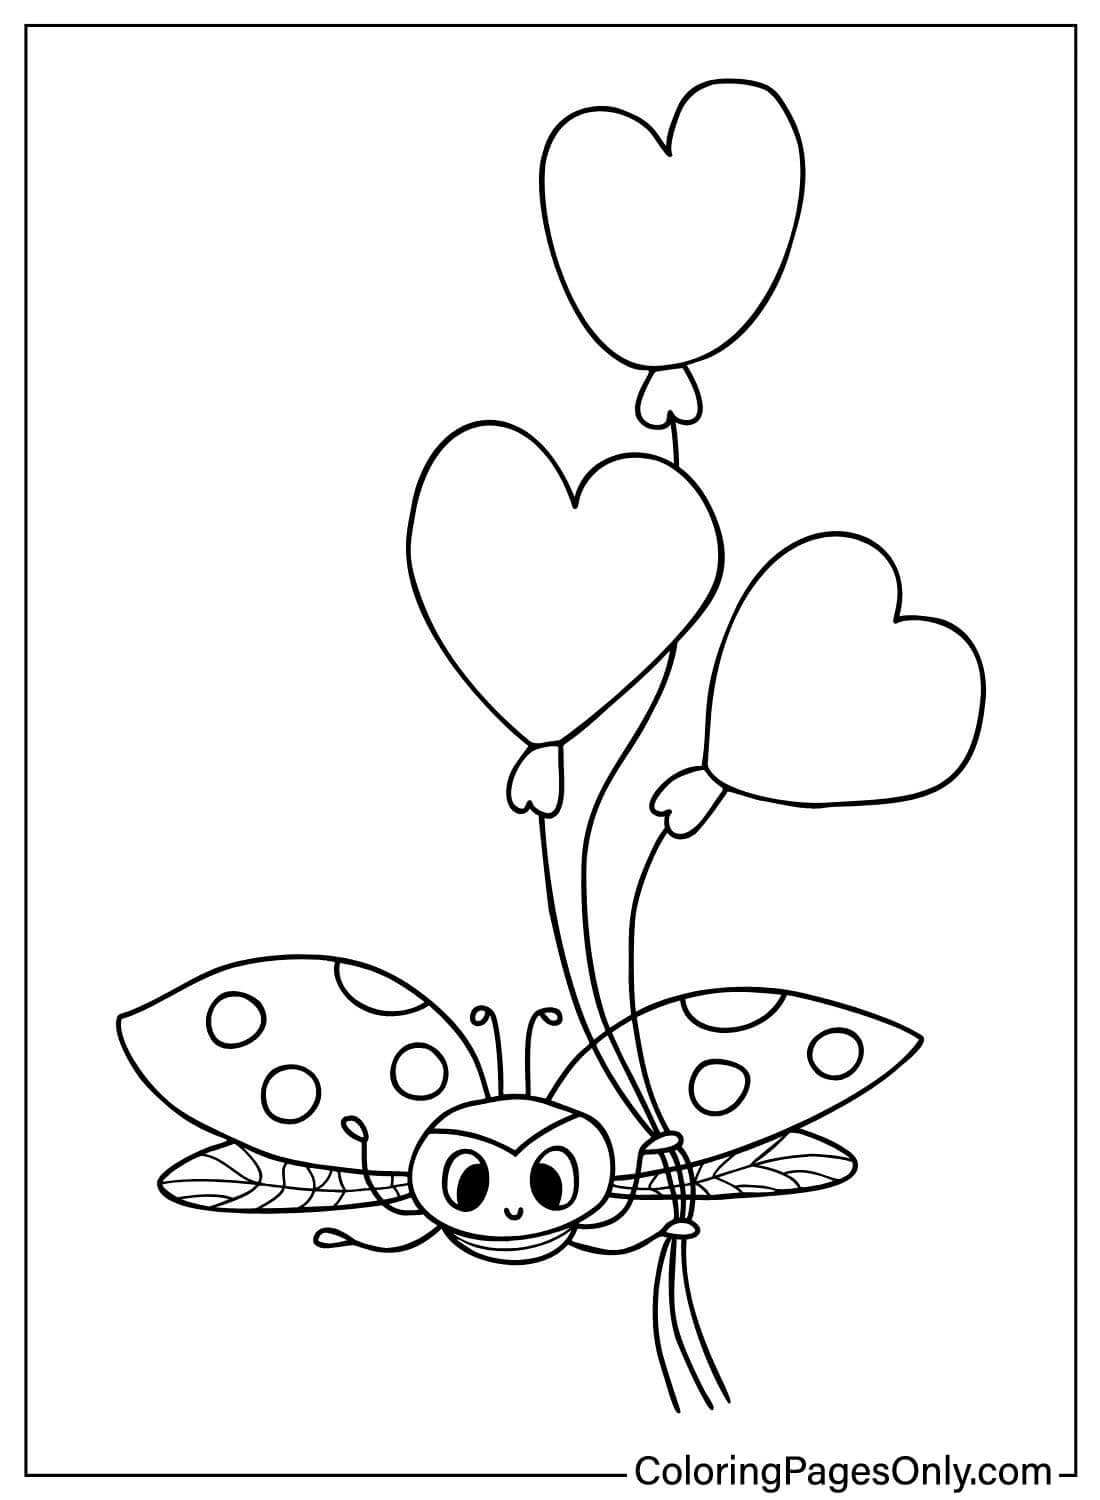 Página para colorear de Mariquita con Globos de Ladybug